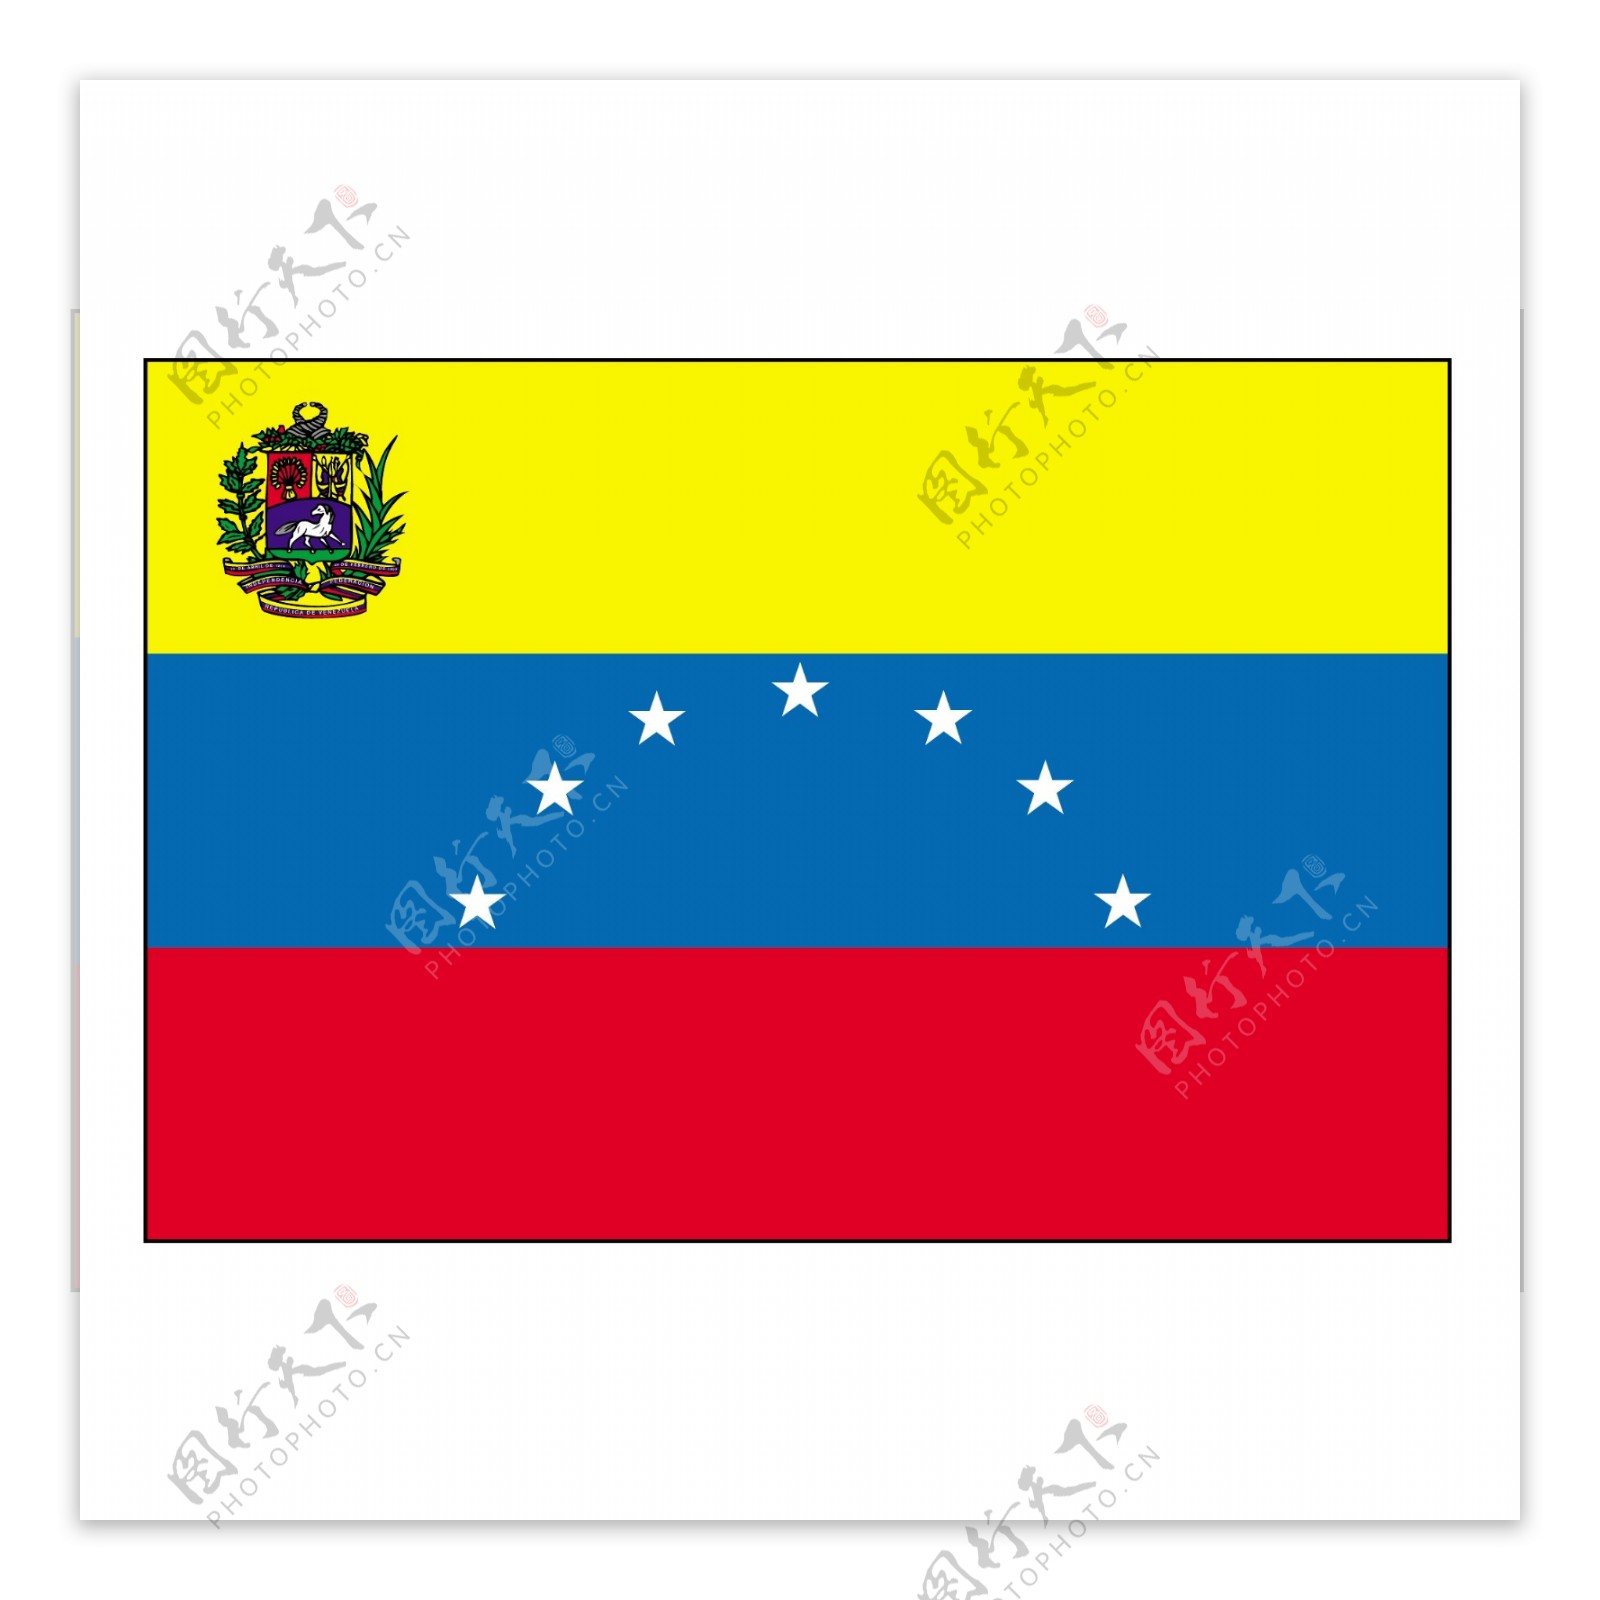 委内瑞拉国旗发展史_高清委内瑞拉的国旗 - 随意云